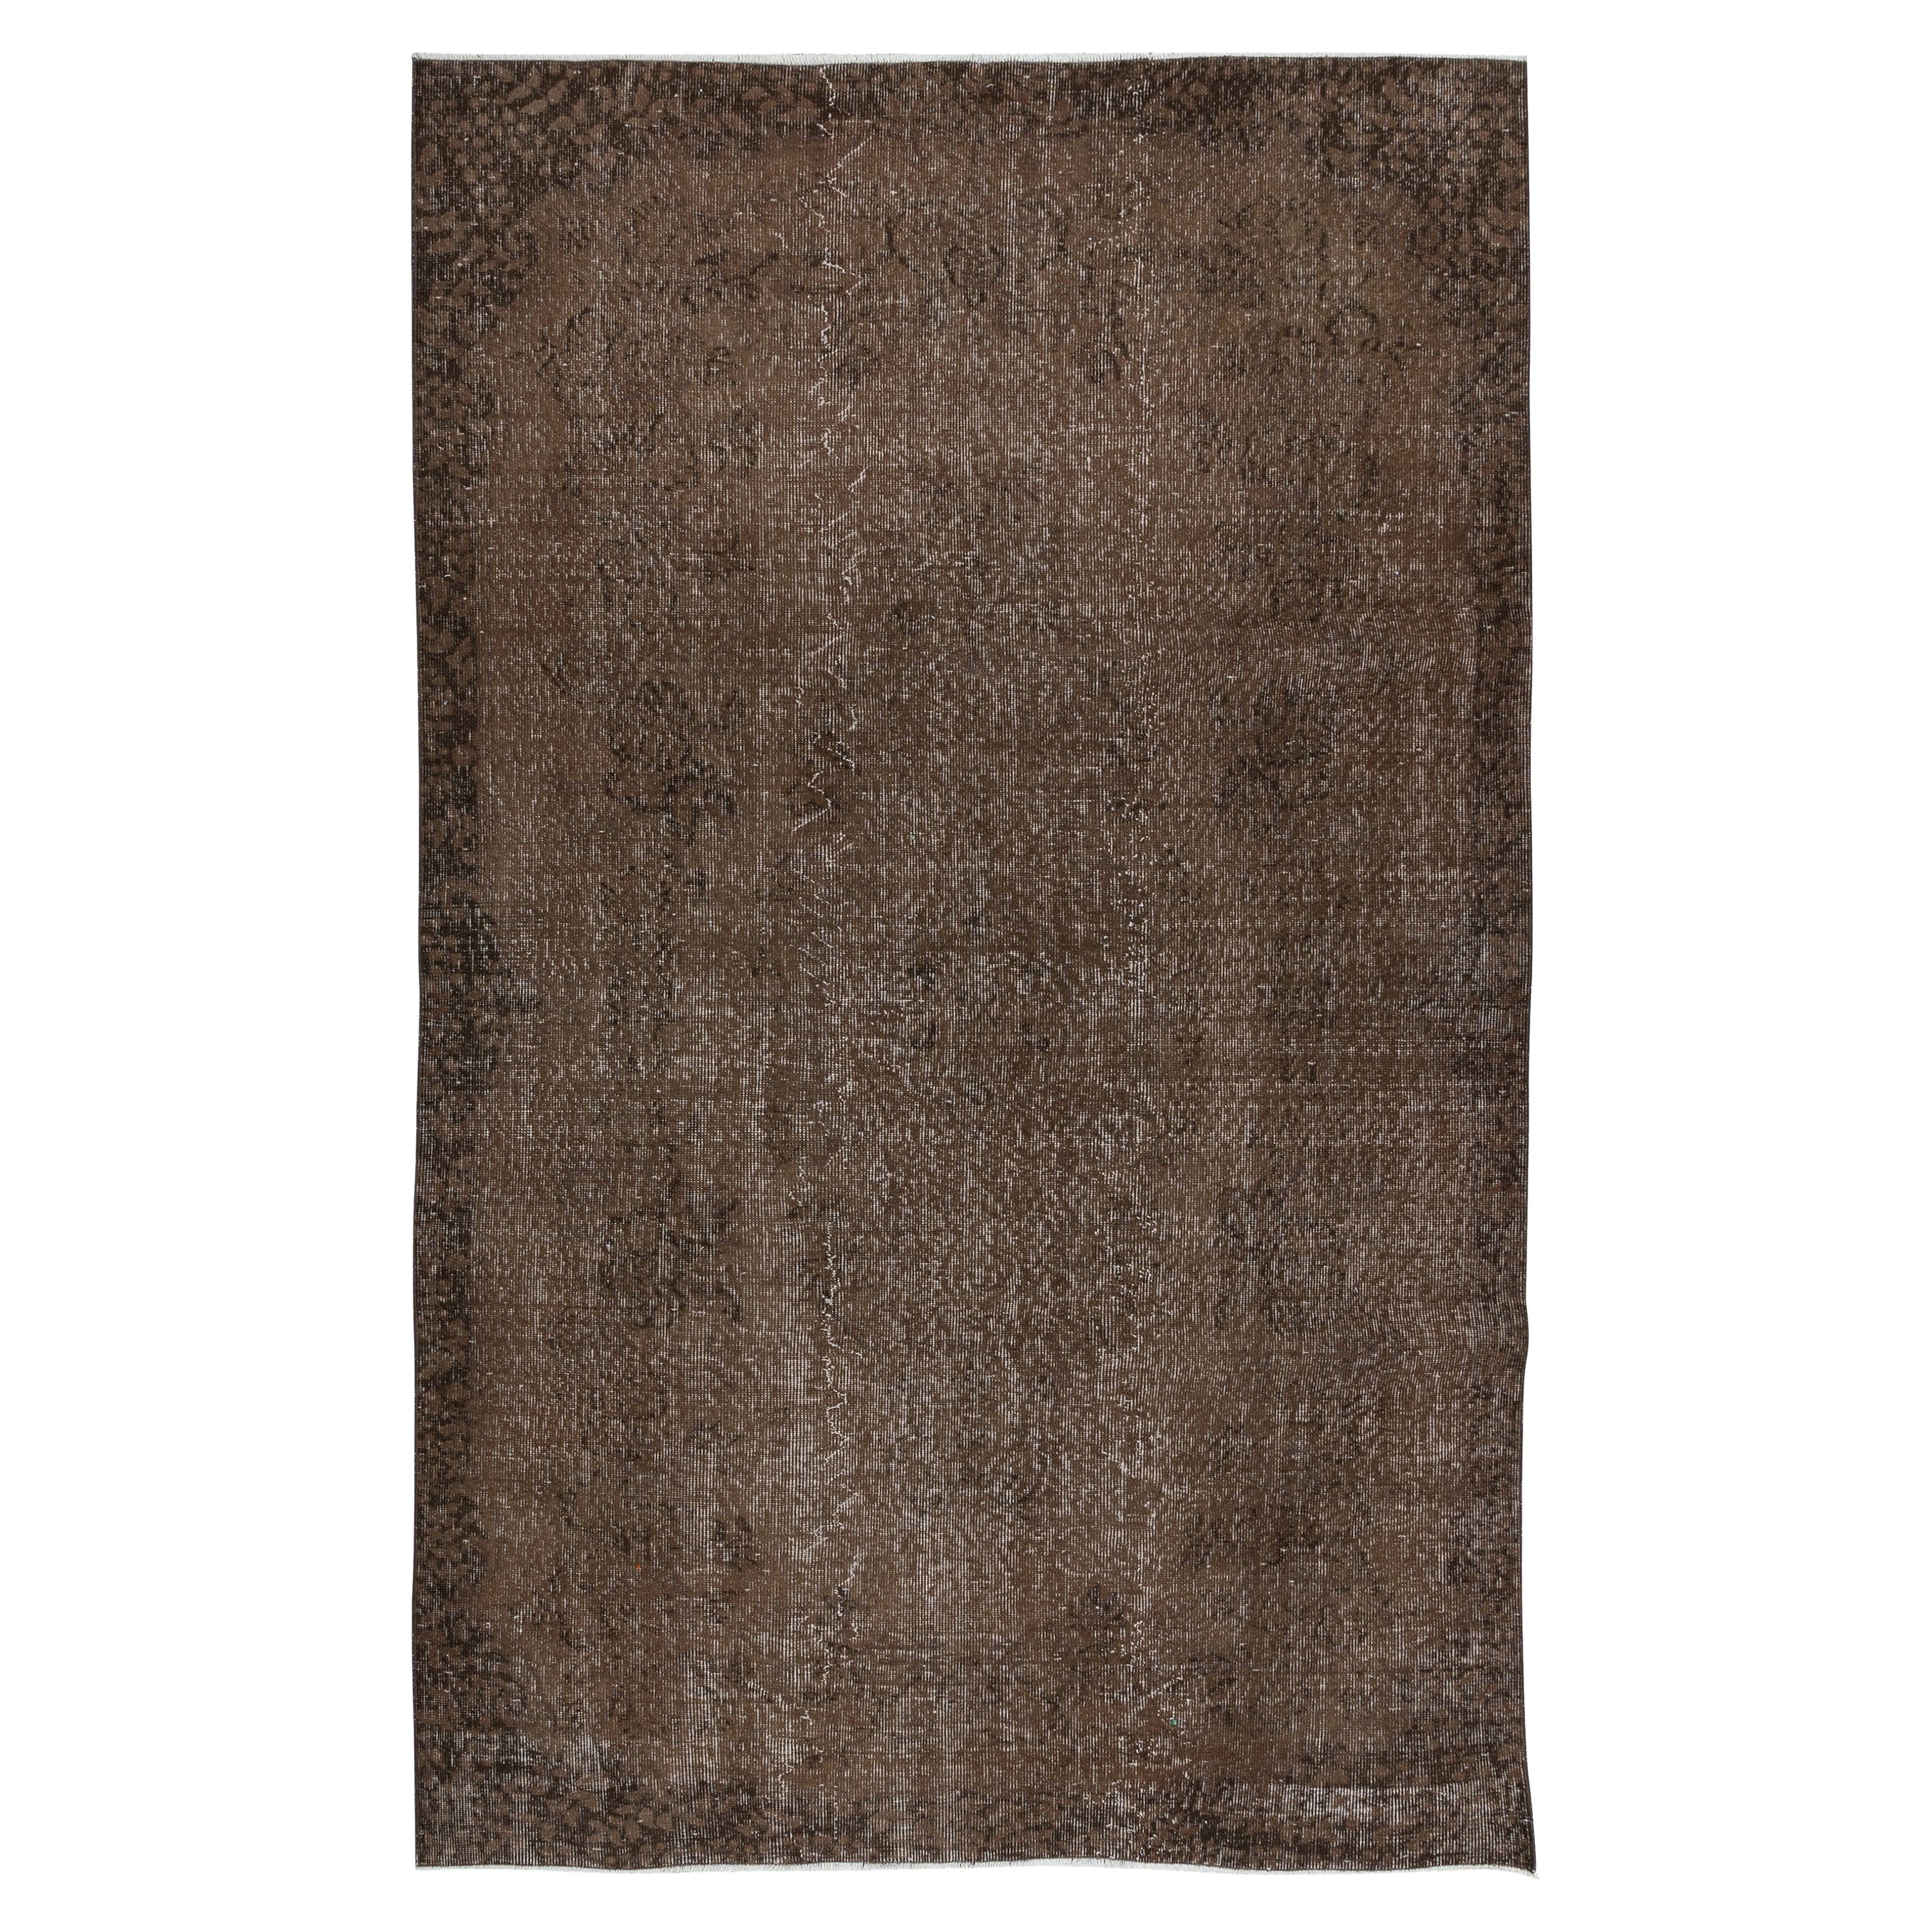 5.6x8.8 Ft Brown Re-Dyed Handmade Türkische Wolle Bereich Teppich für moderne Innenräume